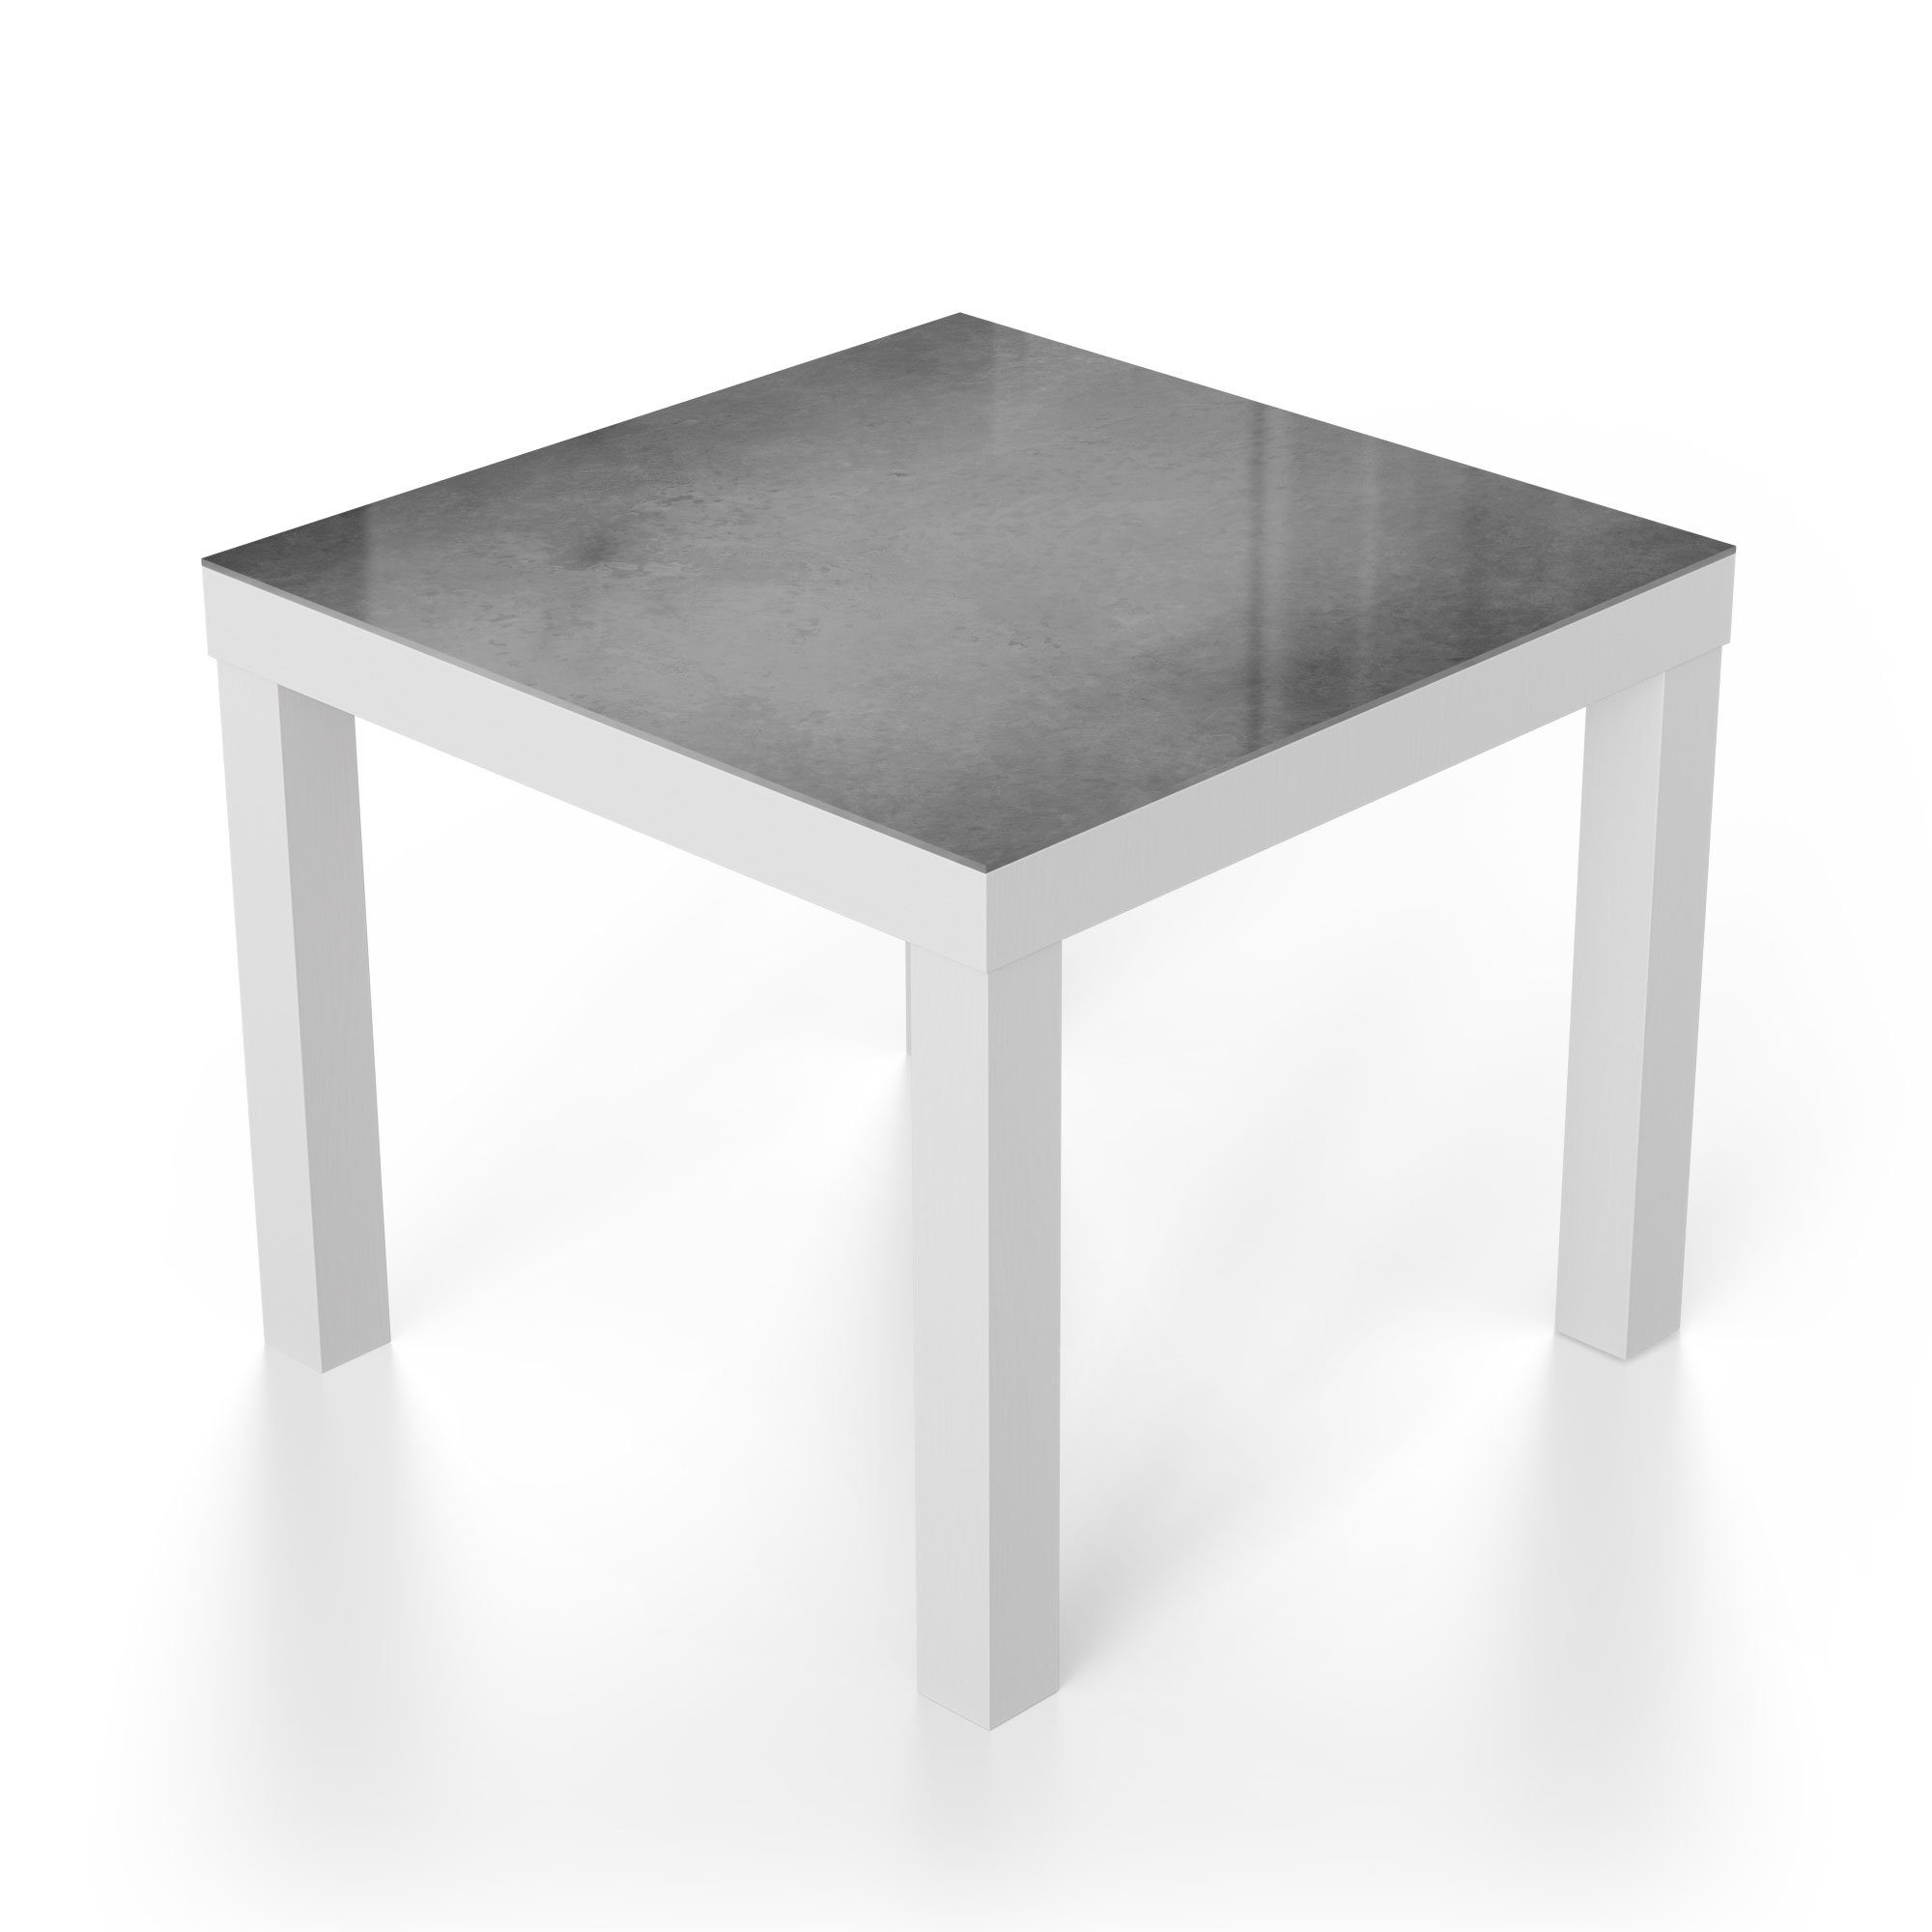 Schultafel', Glas modern Beistelltisch DEQORI Weiß Glastisch Couchtisch 'Leere